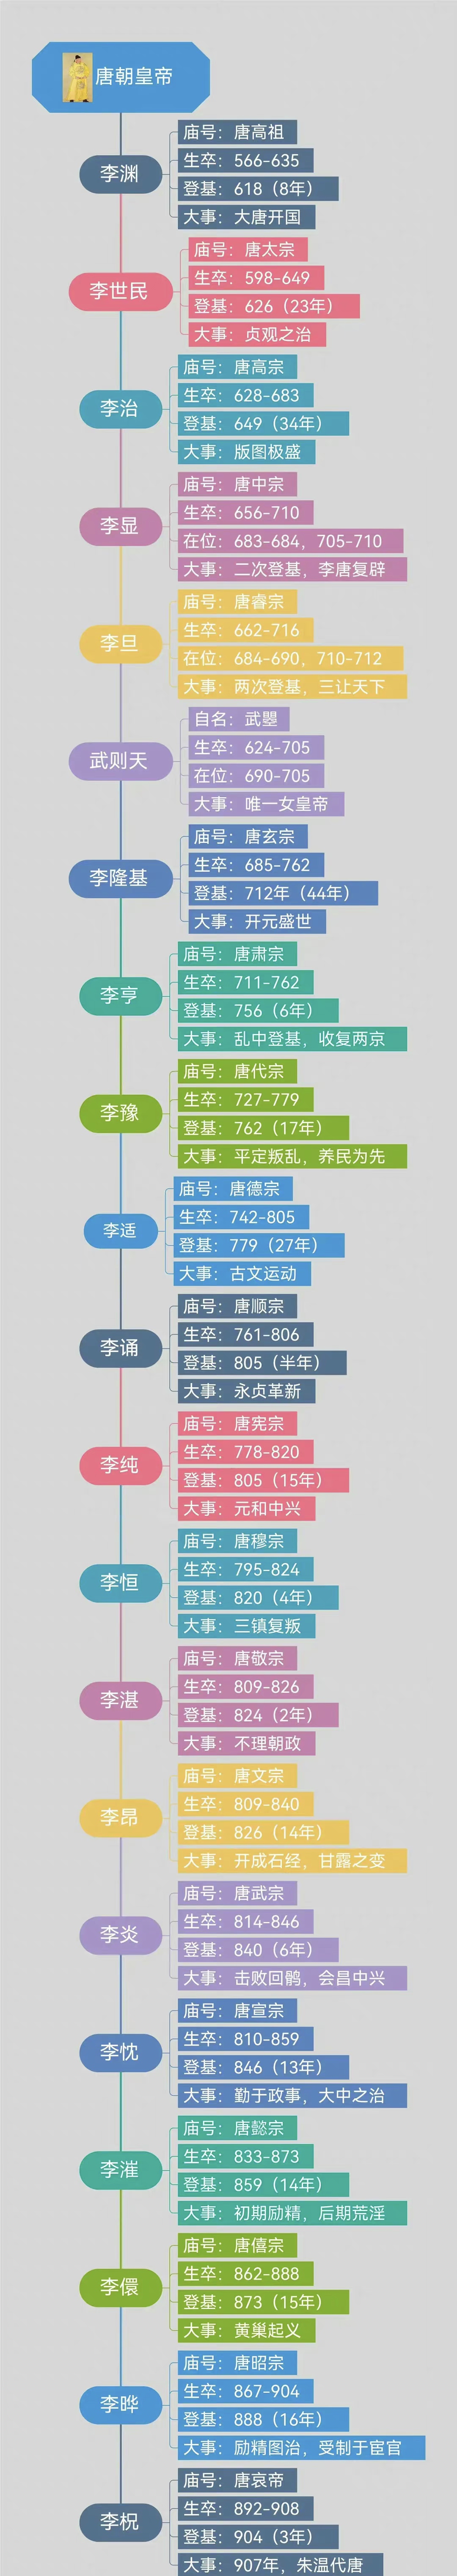 一张图带你看懂唐王朝21帝世系关系码住